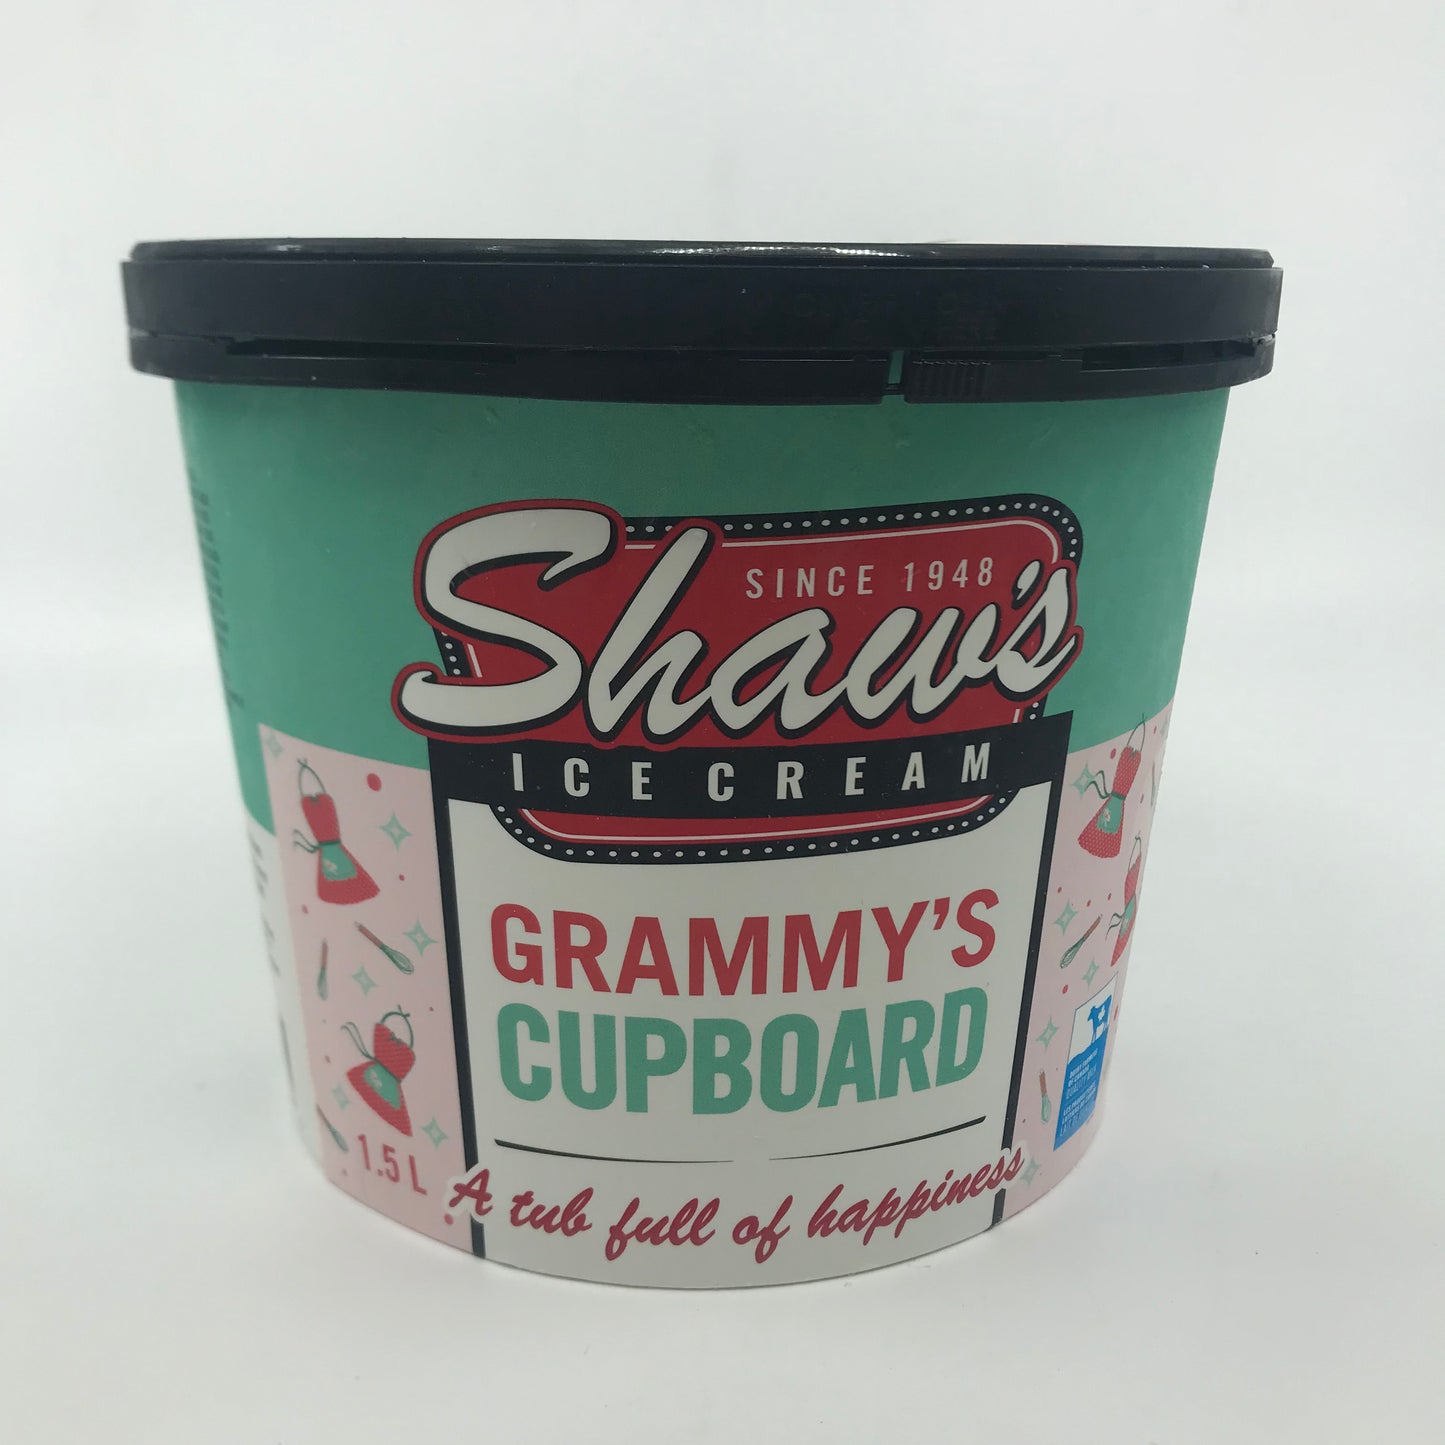 Grammys Cupboard Ice Cream 1.5l tub (Shaw)